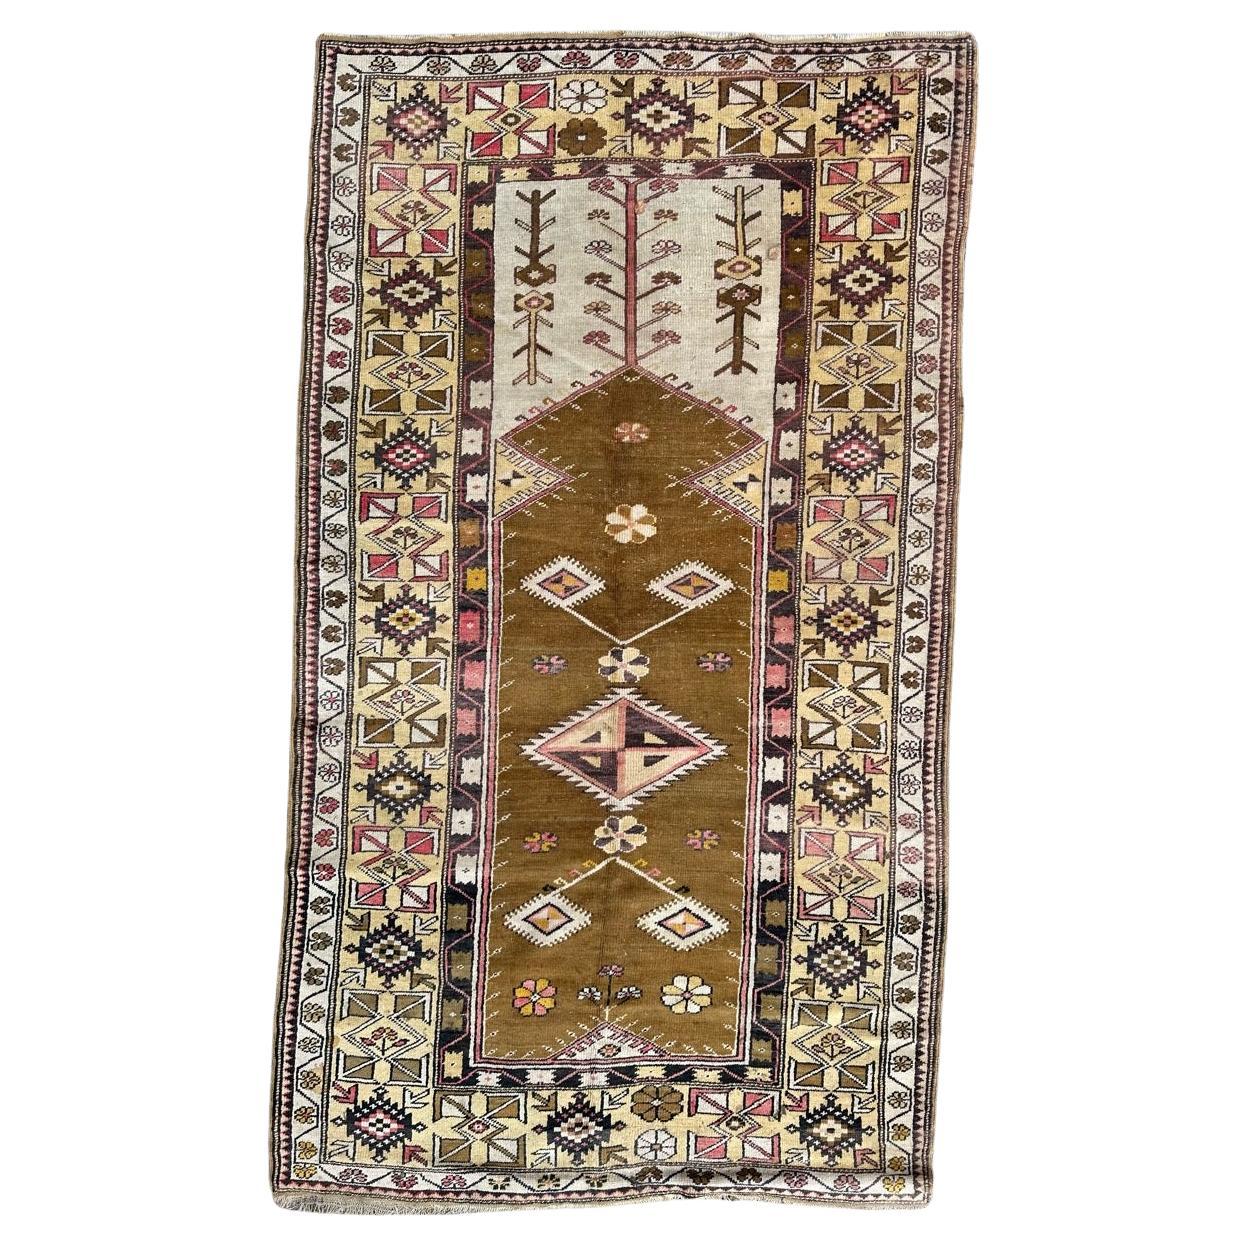 Bobyrugs hübscher türkisch-anatolischer Vintage-Teppich